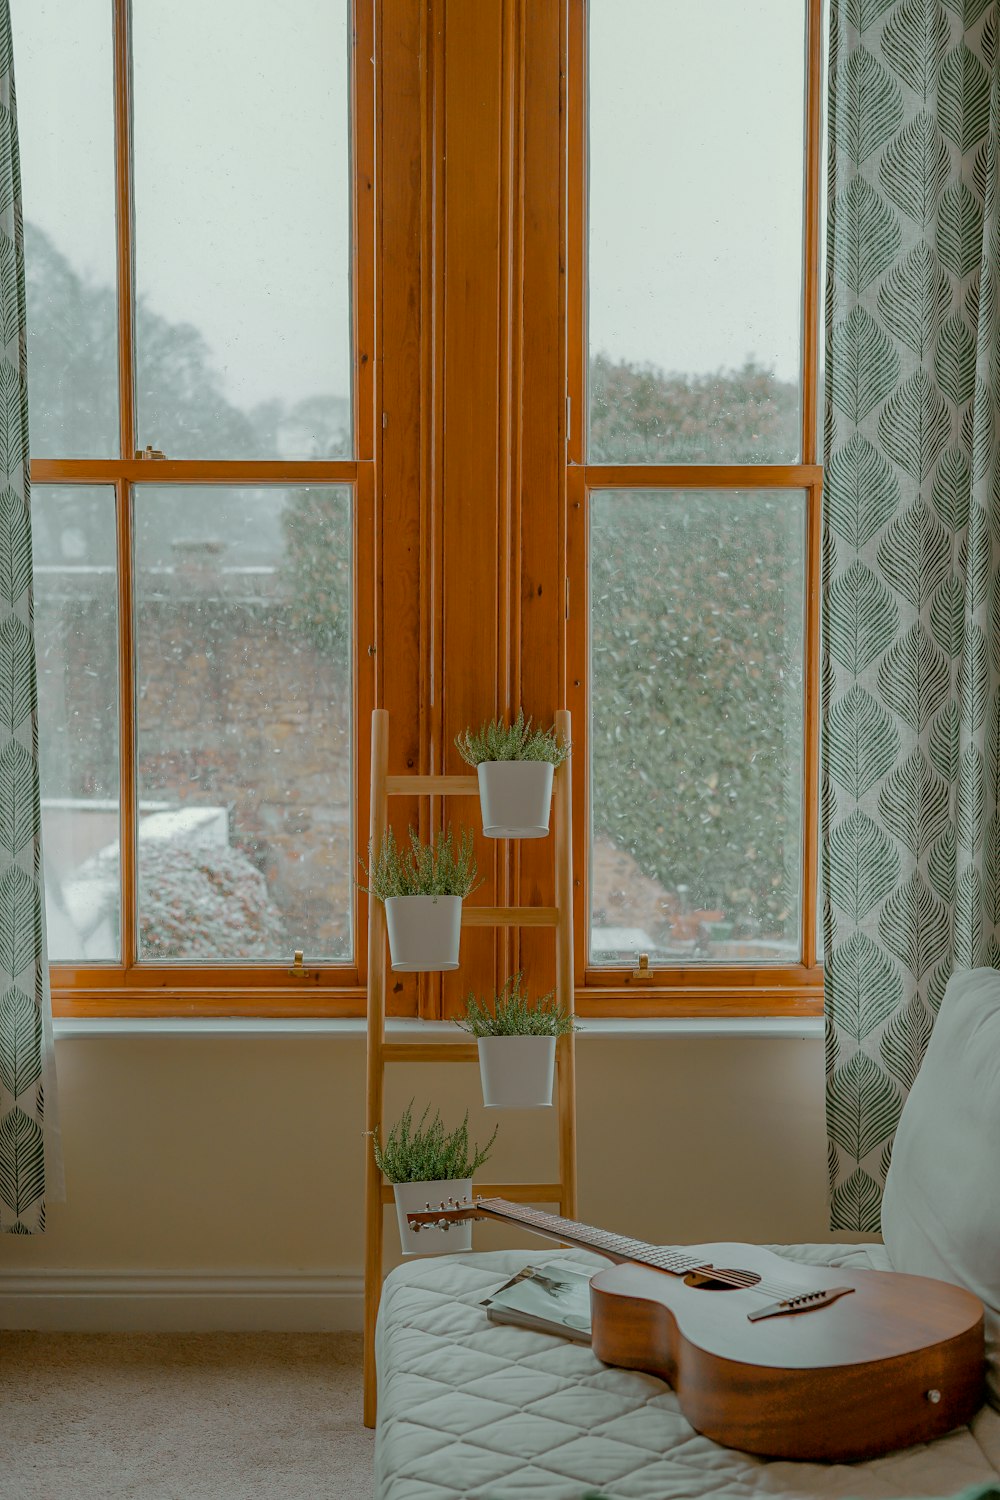 cuatro plantas de hoja verde con maceta en el estante cerca de la ventana